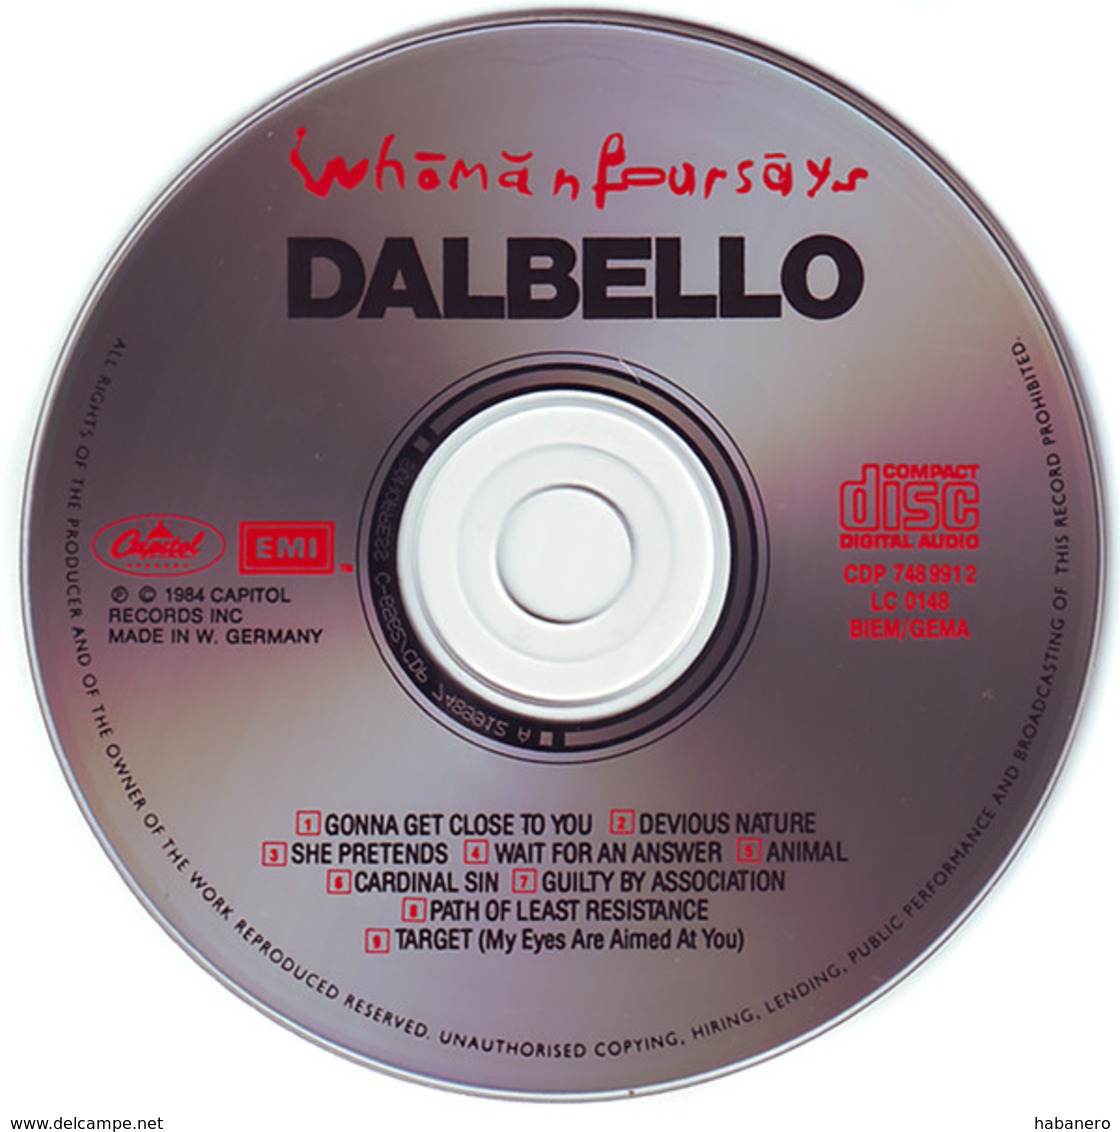 DALBELLO - WHOMANFOURSAYS - Rock